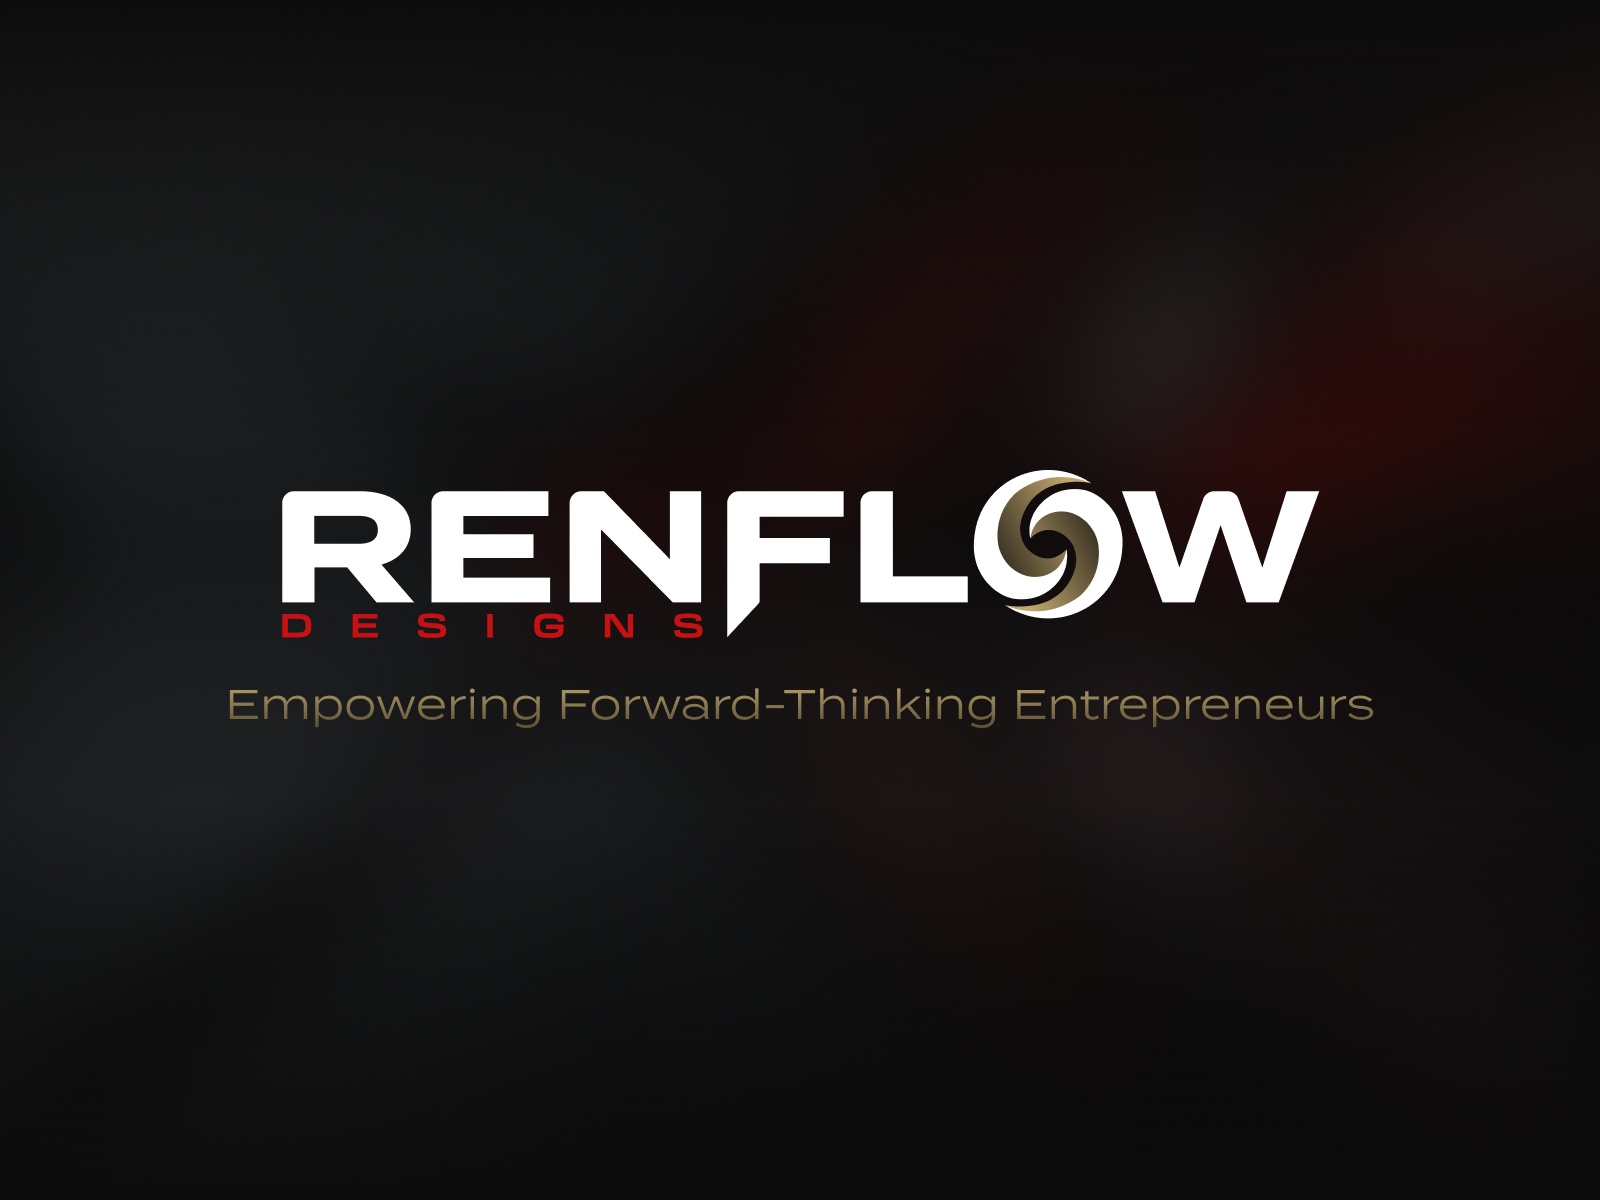 Renflow Designs